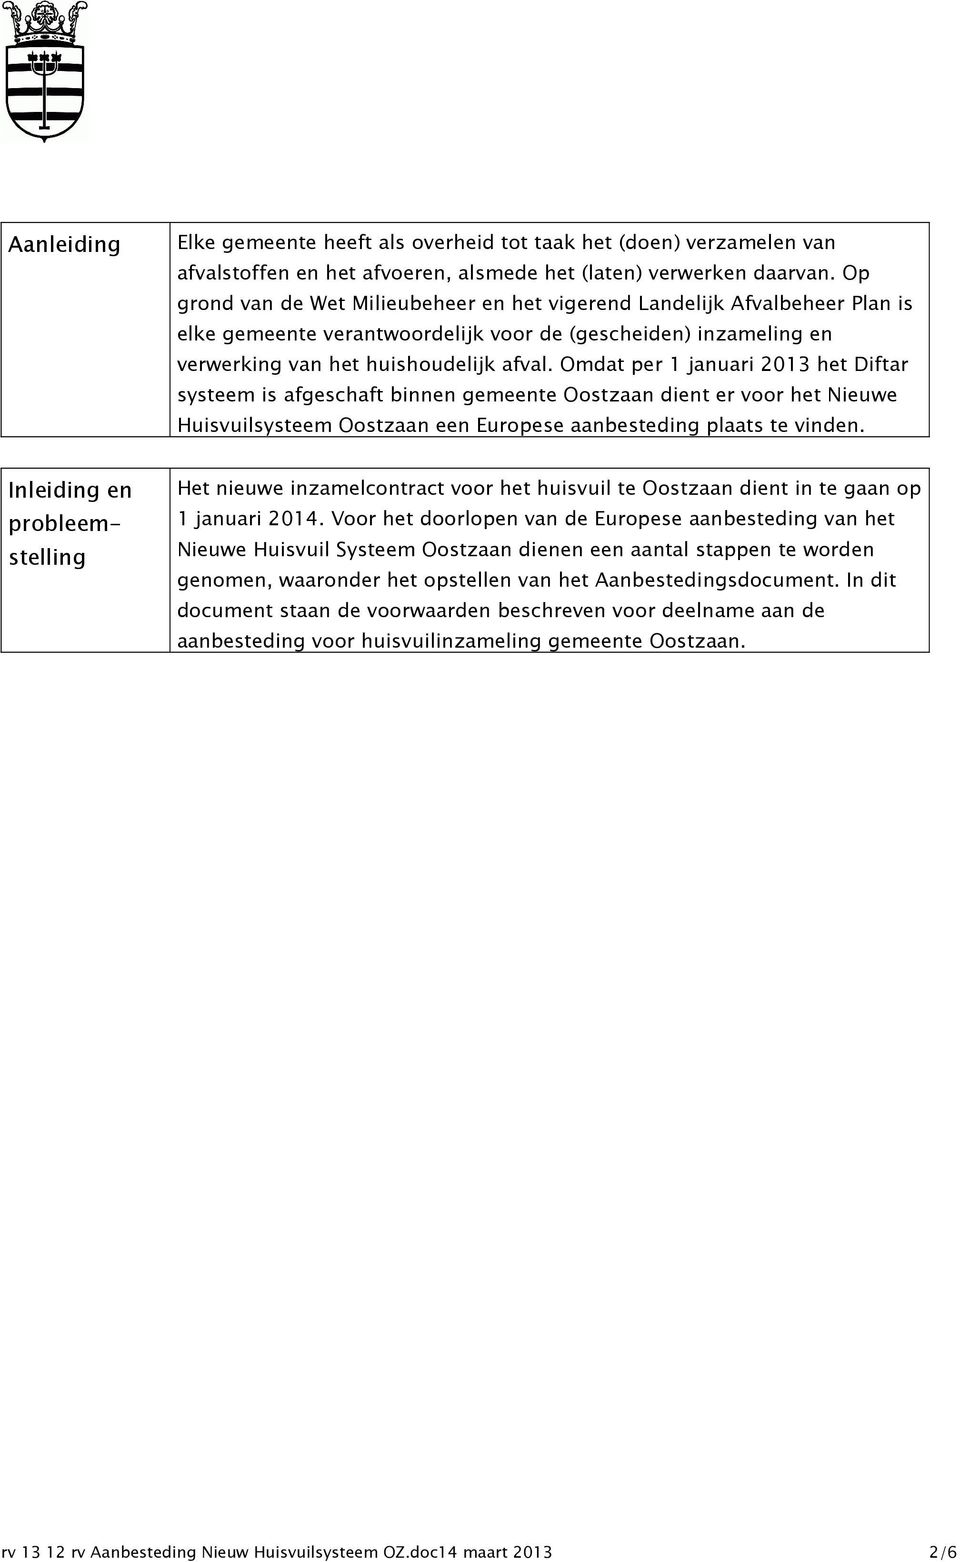 Omdat per 1 januari 2013 het Diftar systeem is afgeschaft binnen gemeente Oostzaan dient er voor het Nieuwe Huisvuilsysteem Oostzaan een Europese aanbesteding plaats te vinden.